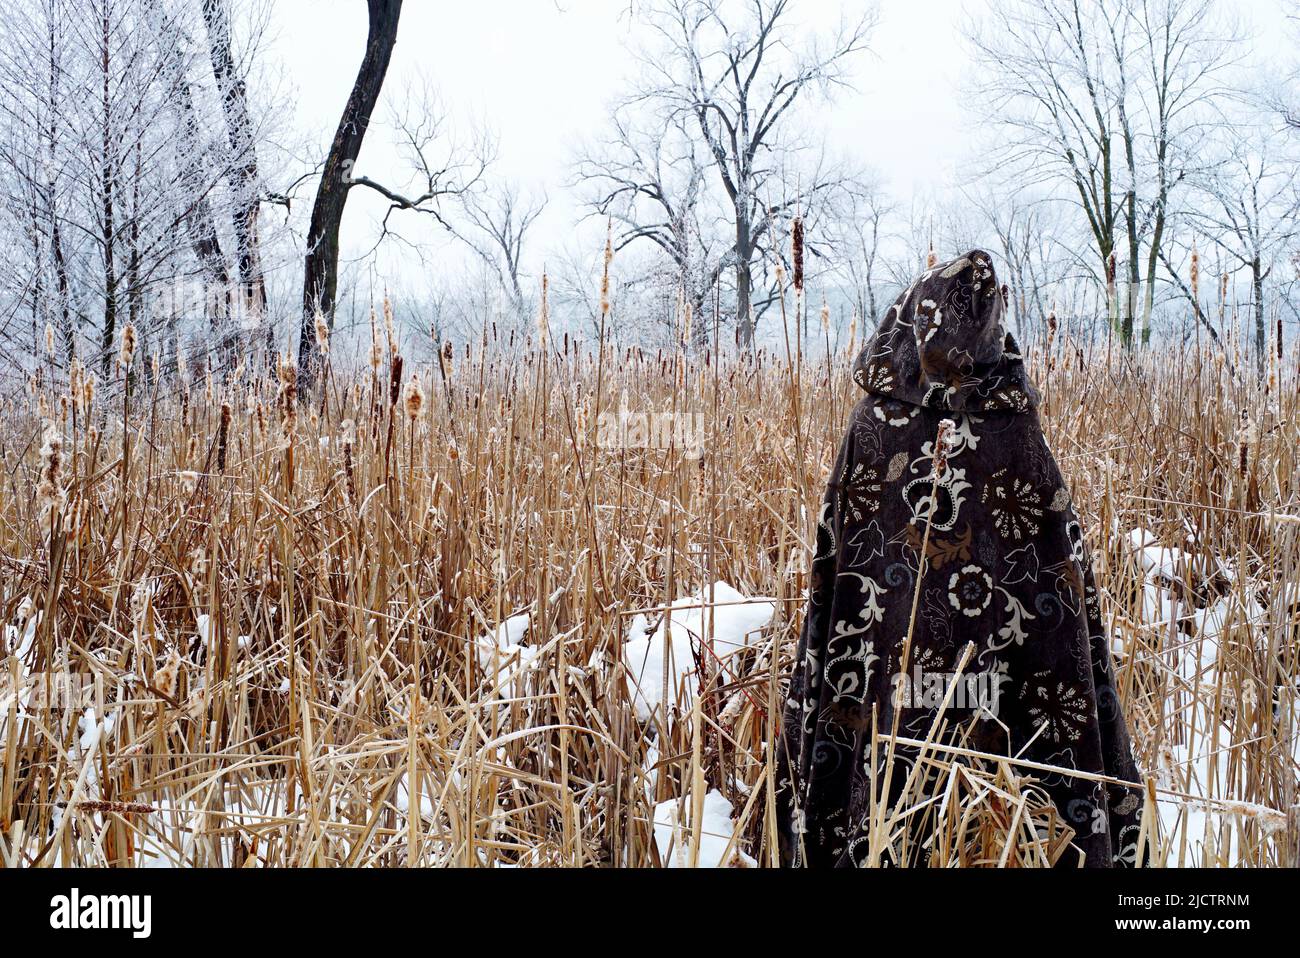 Magicien en manteau médiéval regarde un champ de gel de hoar d'hiver. Des images magiques évoquent un autre monde. Banque D'Images